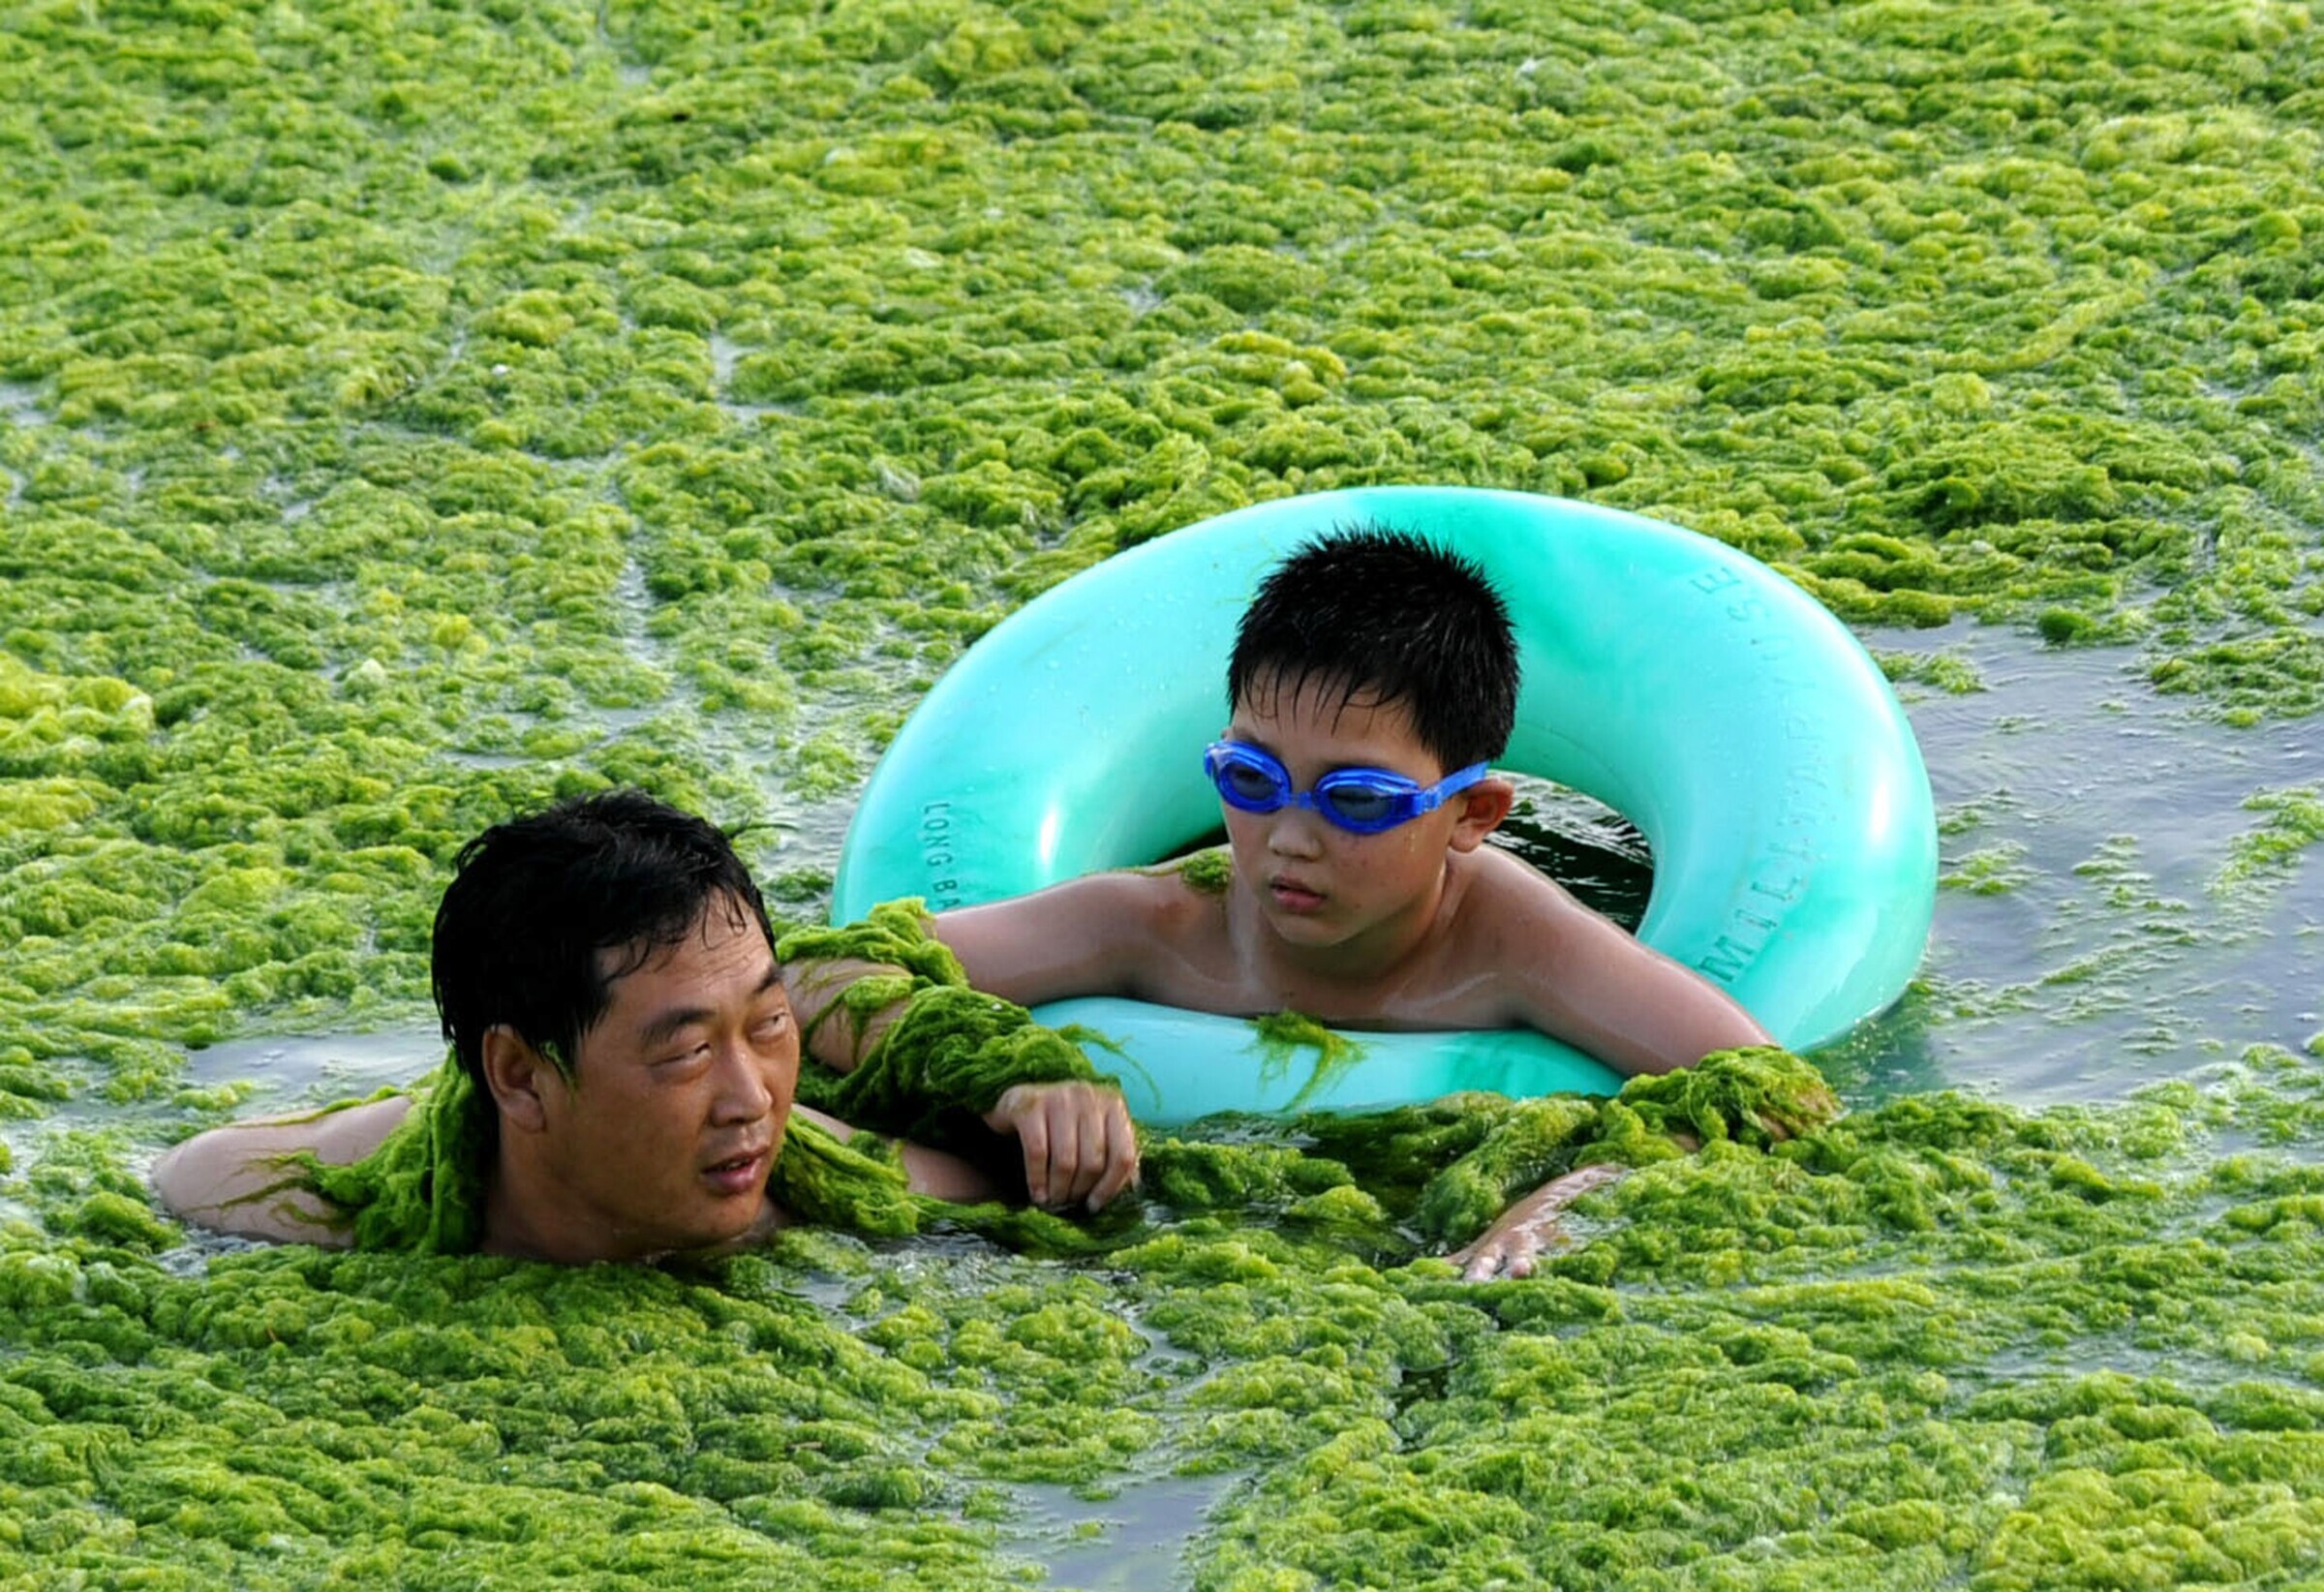 Цветущая вода в бассейне. Водоросли в бассейне. Китайцы в бассейне. Человек в водорослях. Зеленый бассейн.